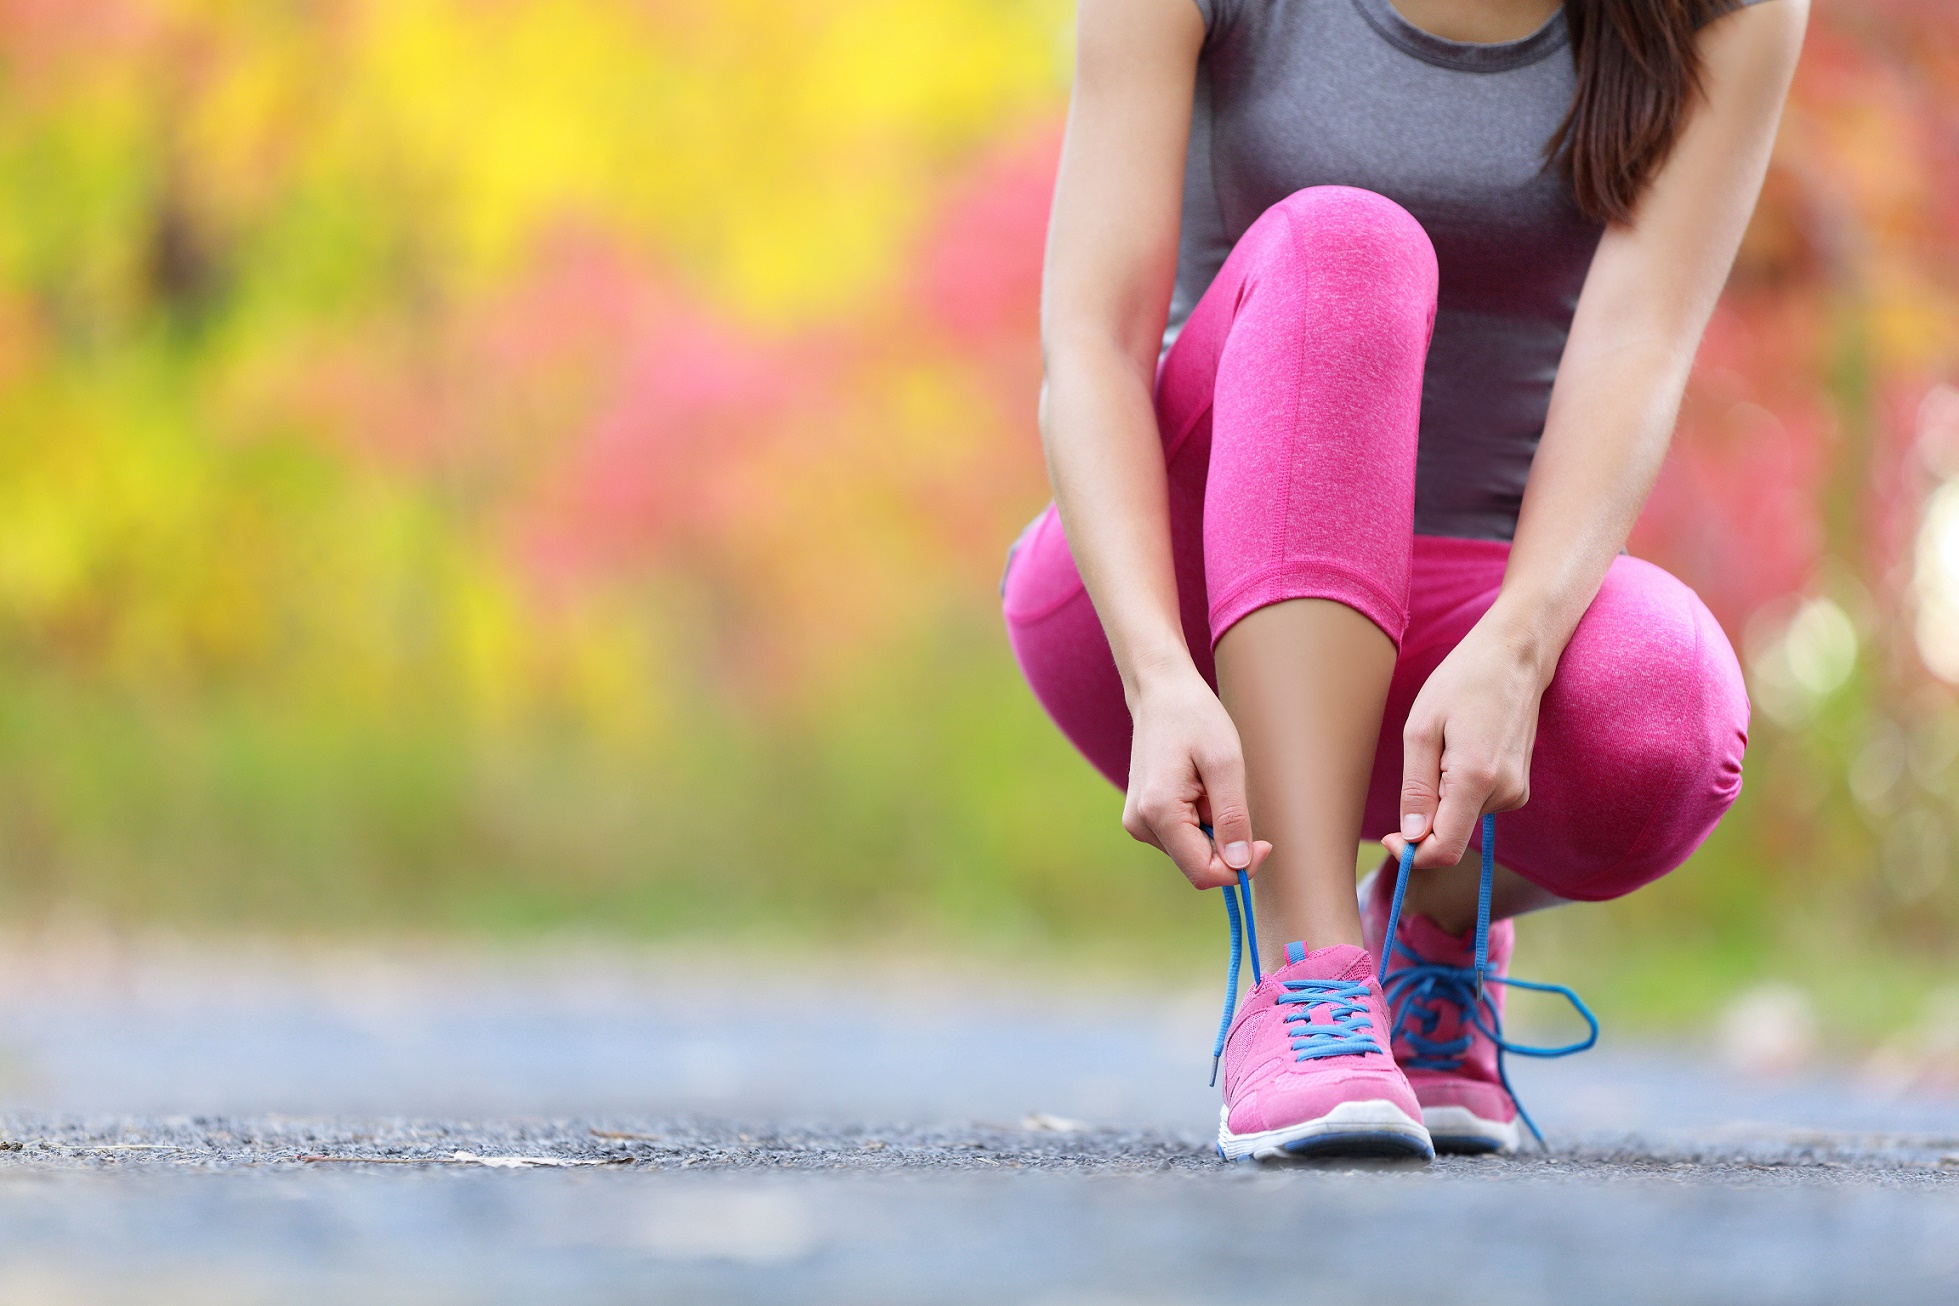 &nbsp;Motivé pour un jogging en 2017 ? © Maridav, Shutterstock